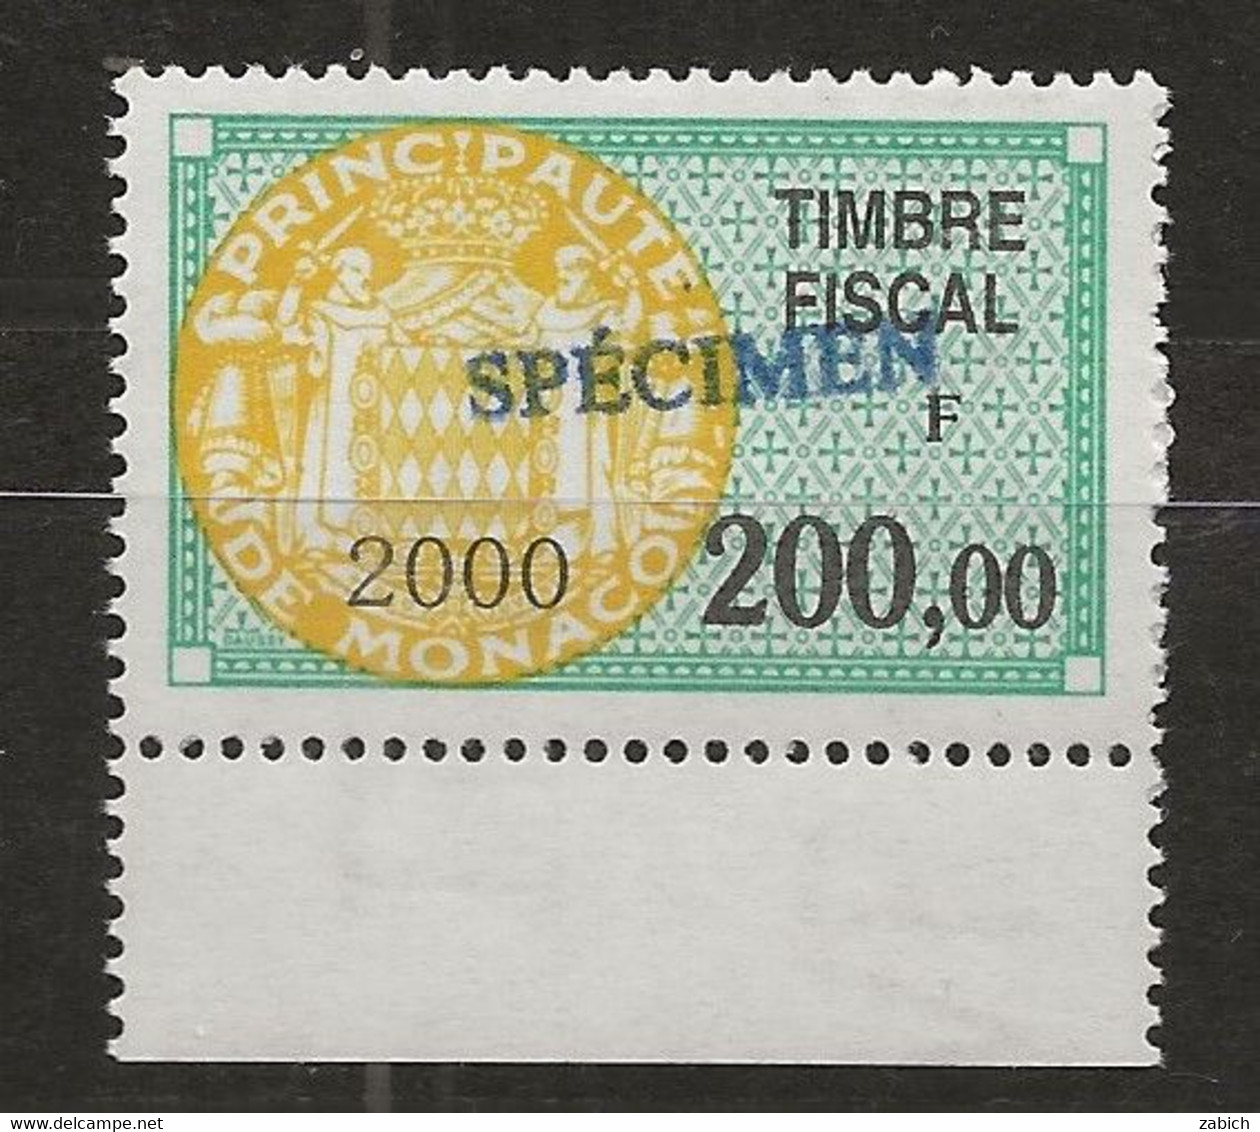 TIMBRES FISCAUX DE MONACO SERIE UNIFIEE N°98 200F Vert, Jaune 2000 Rare Surchargé Spécimen Neuf Gomme Mnh (**) - Fiscales